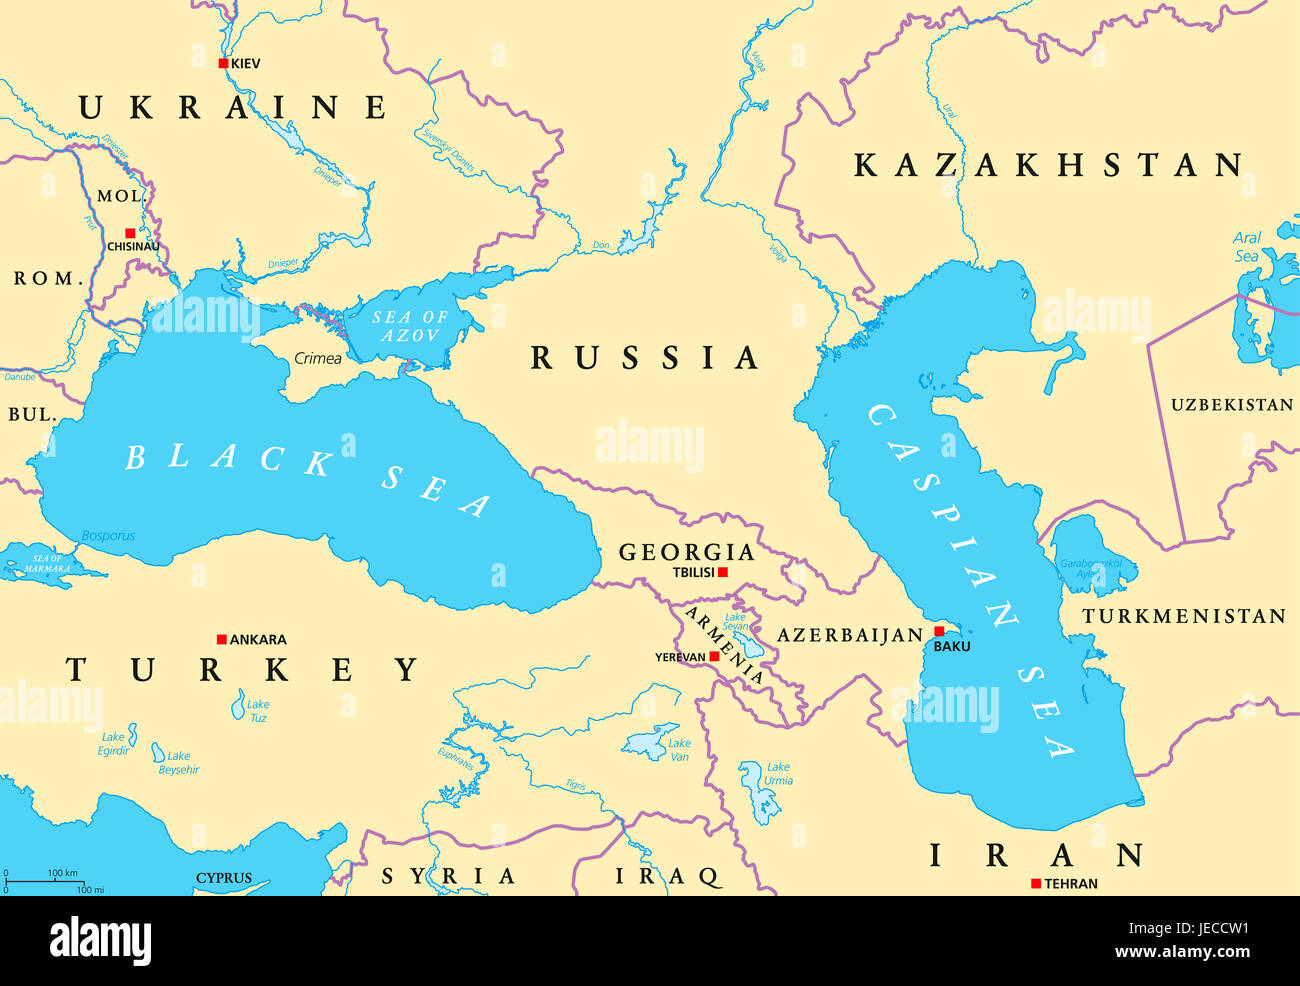 Schwarzen und Kaspischen Meer Region politische Karte mit Hauptstädten, Grenzen, Flüssen und Seen. Gewässer zwischen Osteuropa und Westasien. Stockfoto